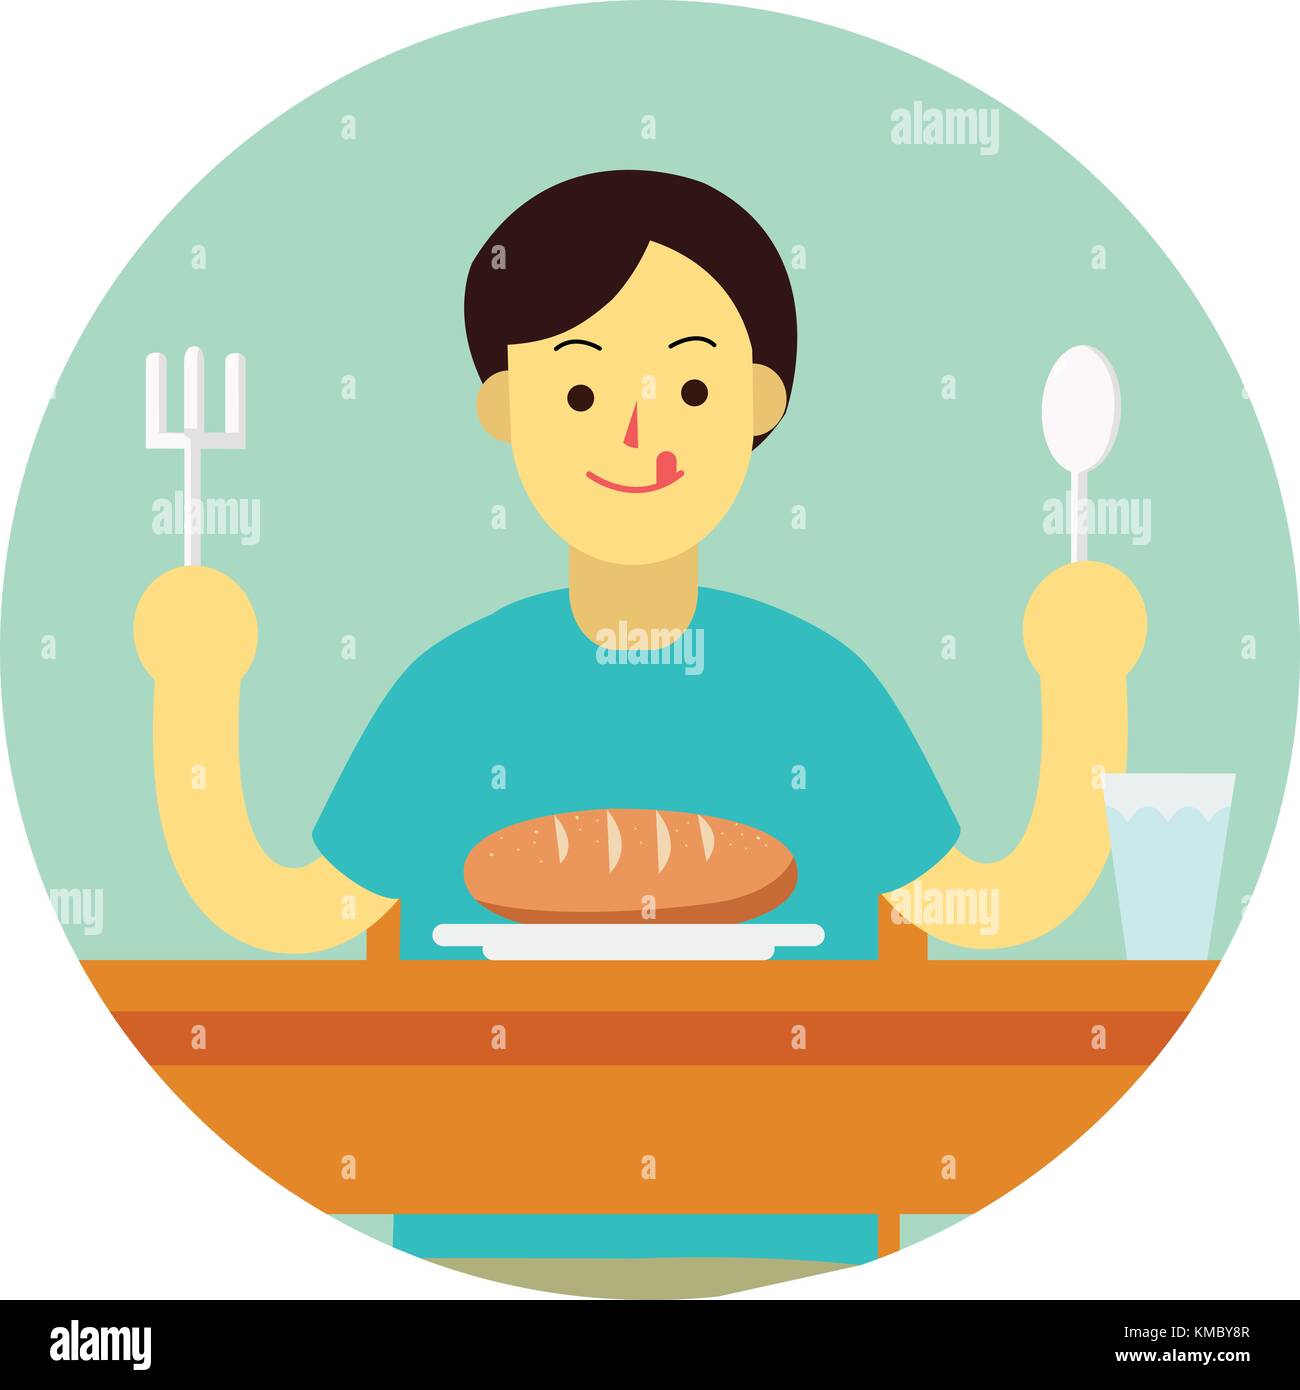 Junger Mann bereiten Brot mit Löffel und Gabel am Tisch zu essen. flachbild Mann cartoon Design im grünen Kreis Vector Illustration Stock Vektor